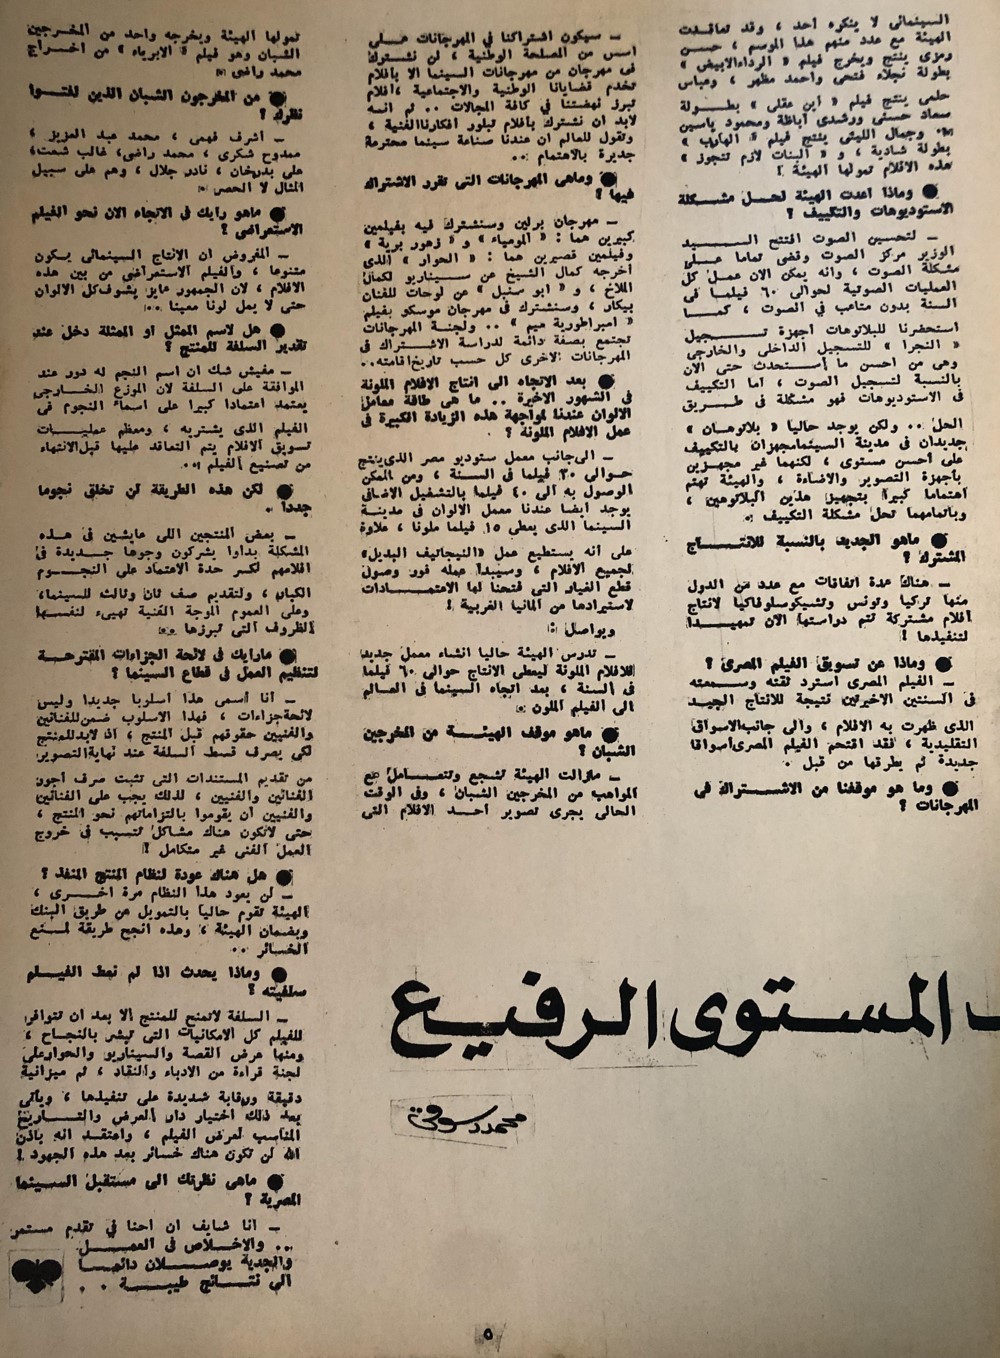 حوار صحفي : سعاد حسني تبحث المستوى الرفيع 1973 م 264